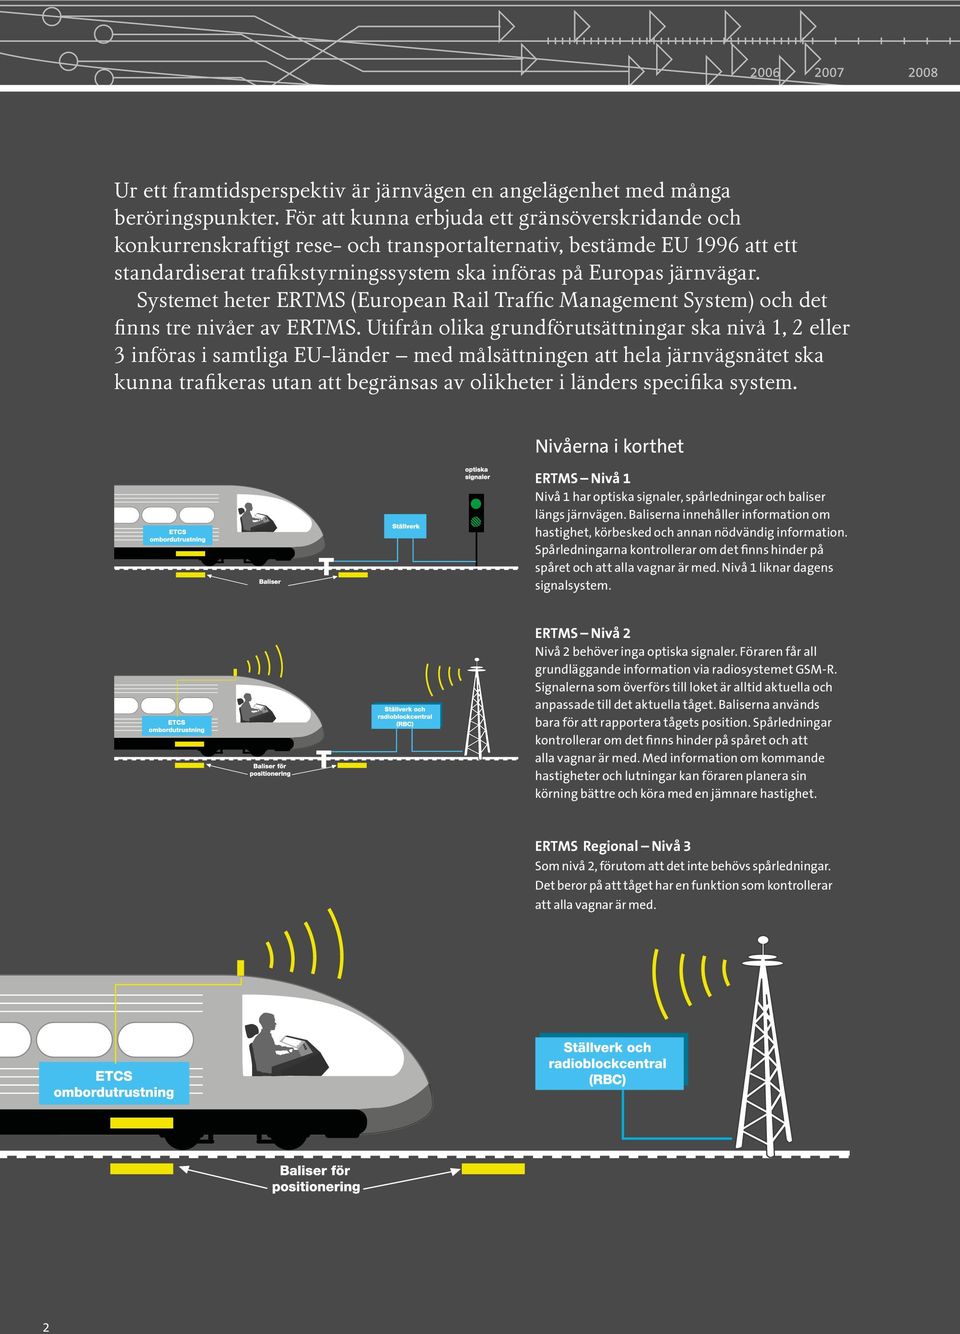 Systemet heter ERTMS (European Rail Traffic Management System) och det finns tre nivåer av ERTMS.